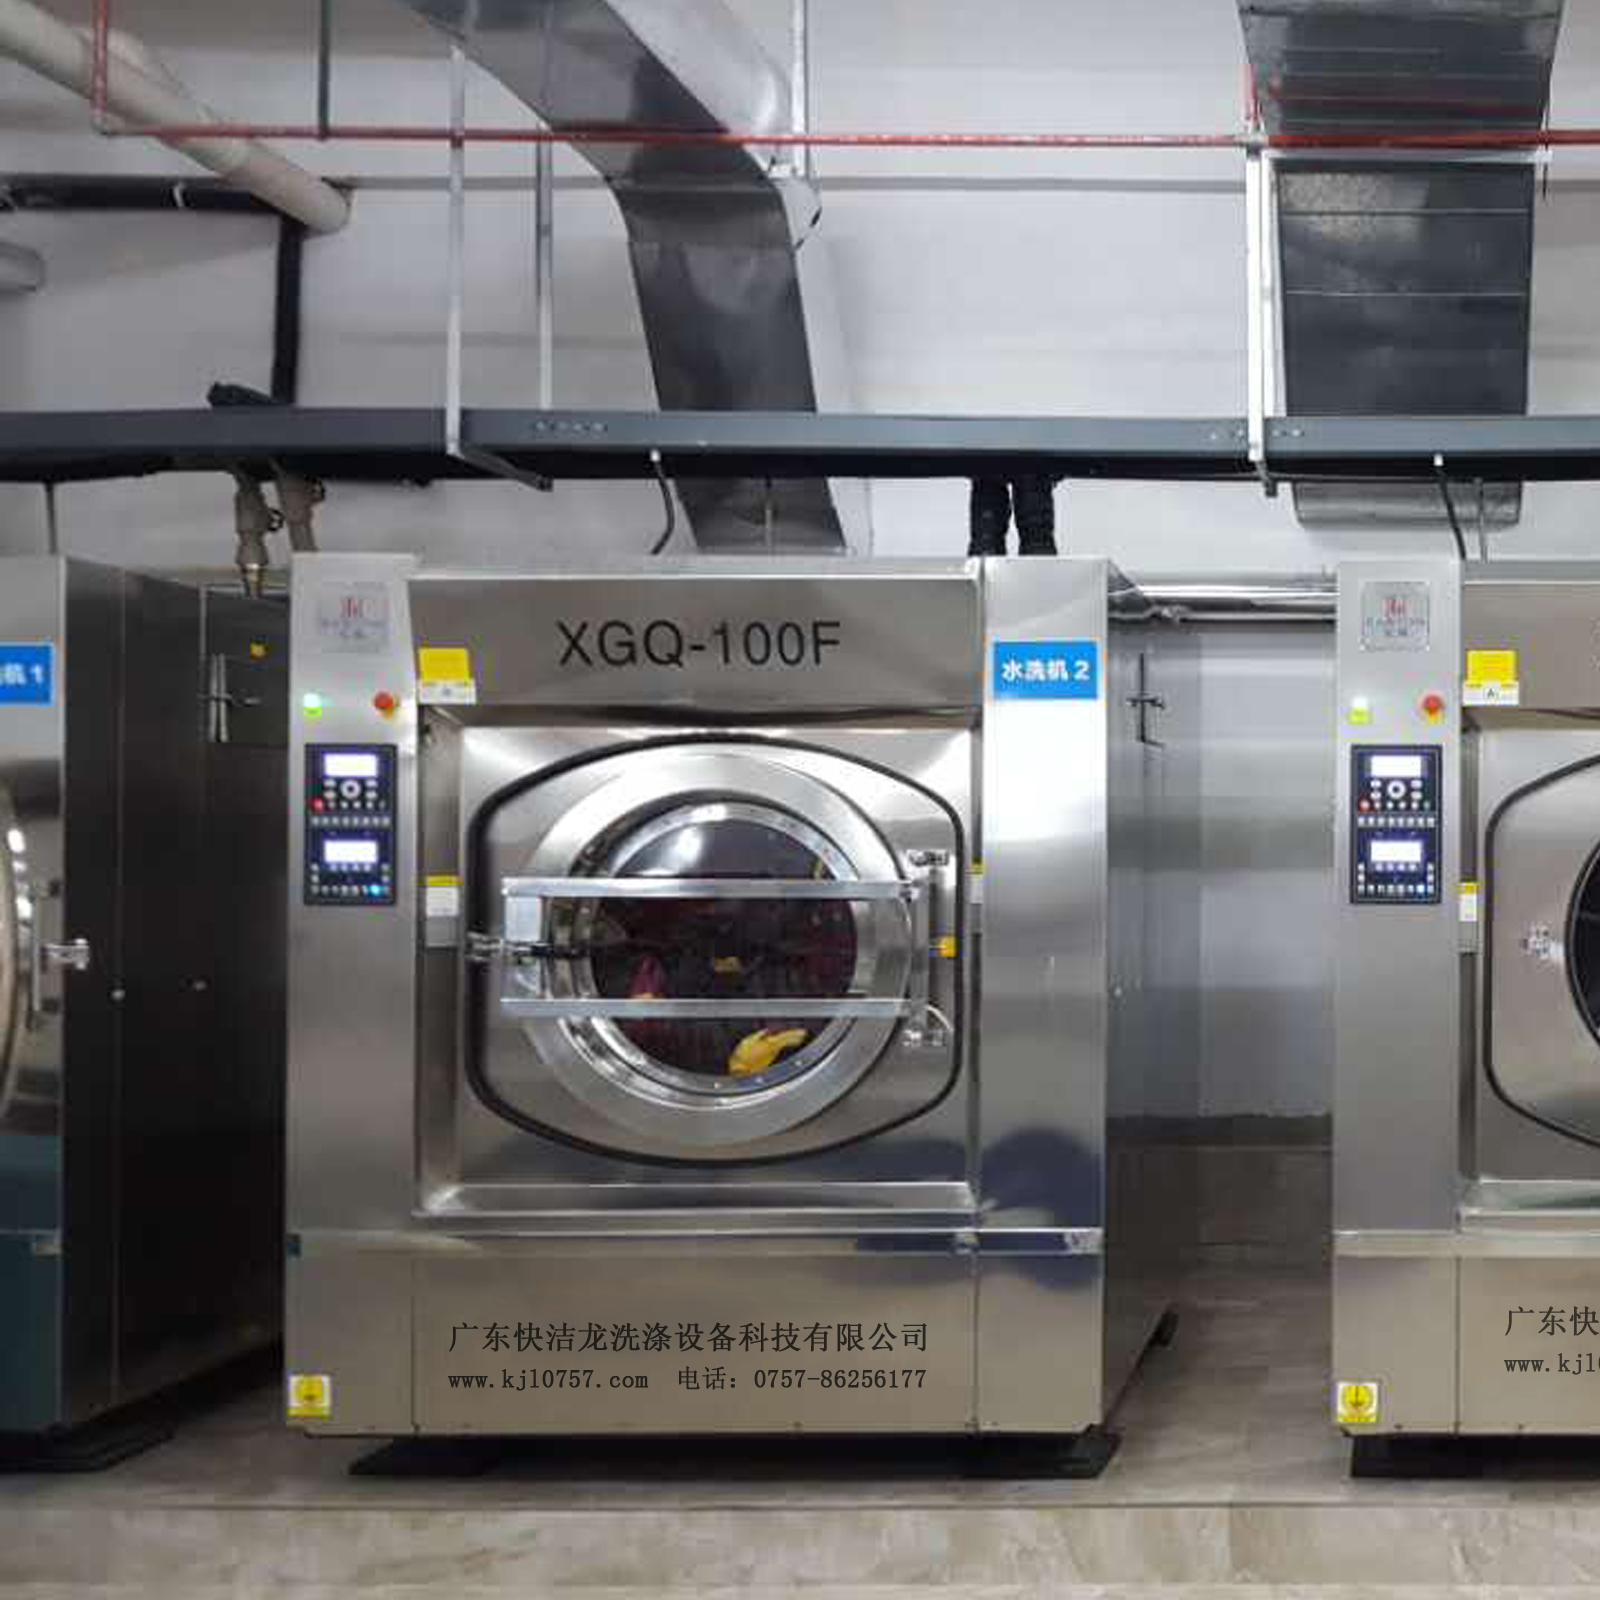 广东快洁龙供应福建100公斤大型洗衣机